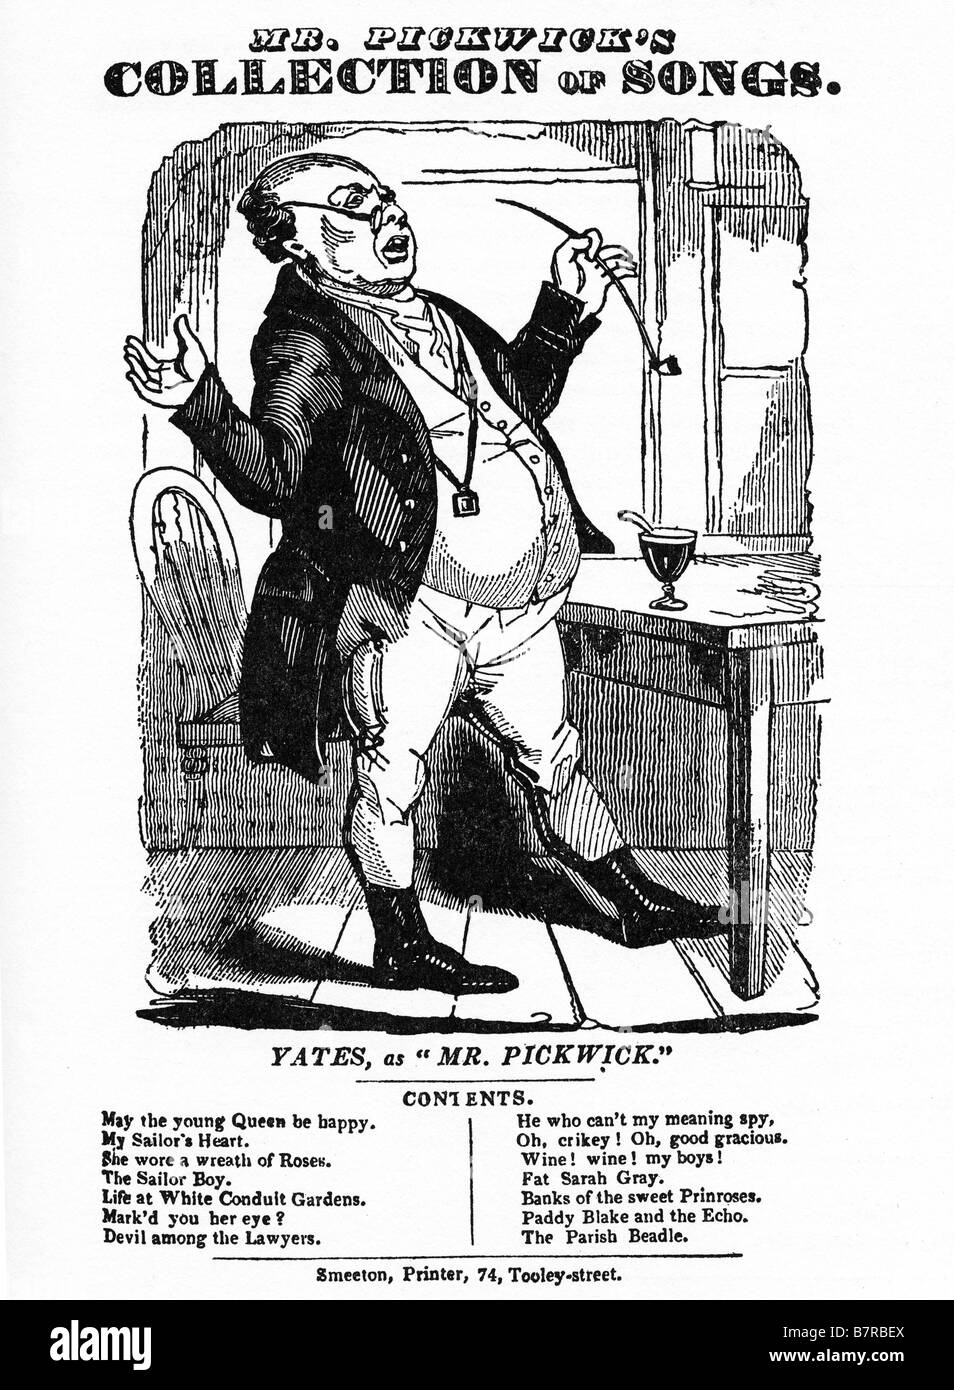 Signor Pickwicks collezione di canzoni 1840 annuncio che mostri attore Frederick Yates in una versione di drammatizzare il libro di Charles Dickens Foto Stock